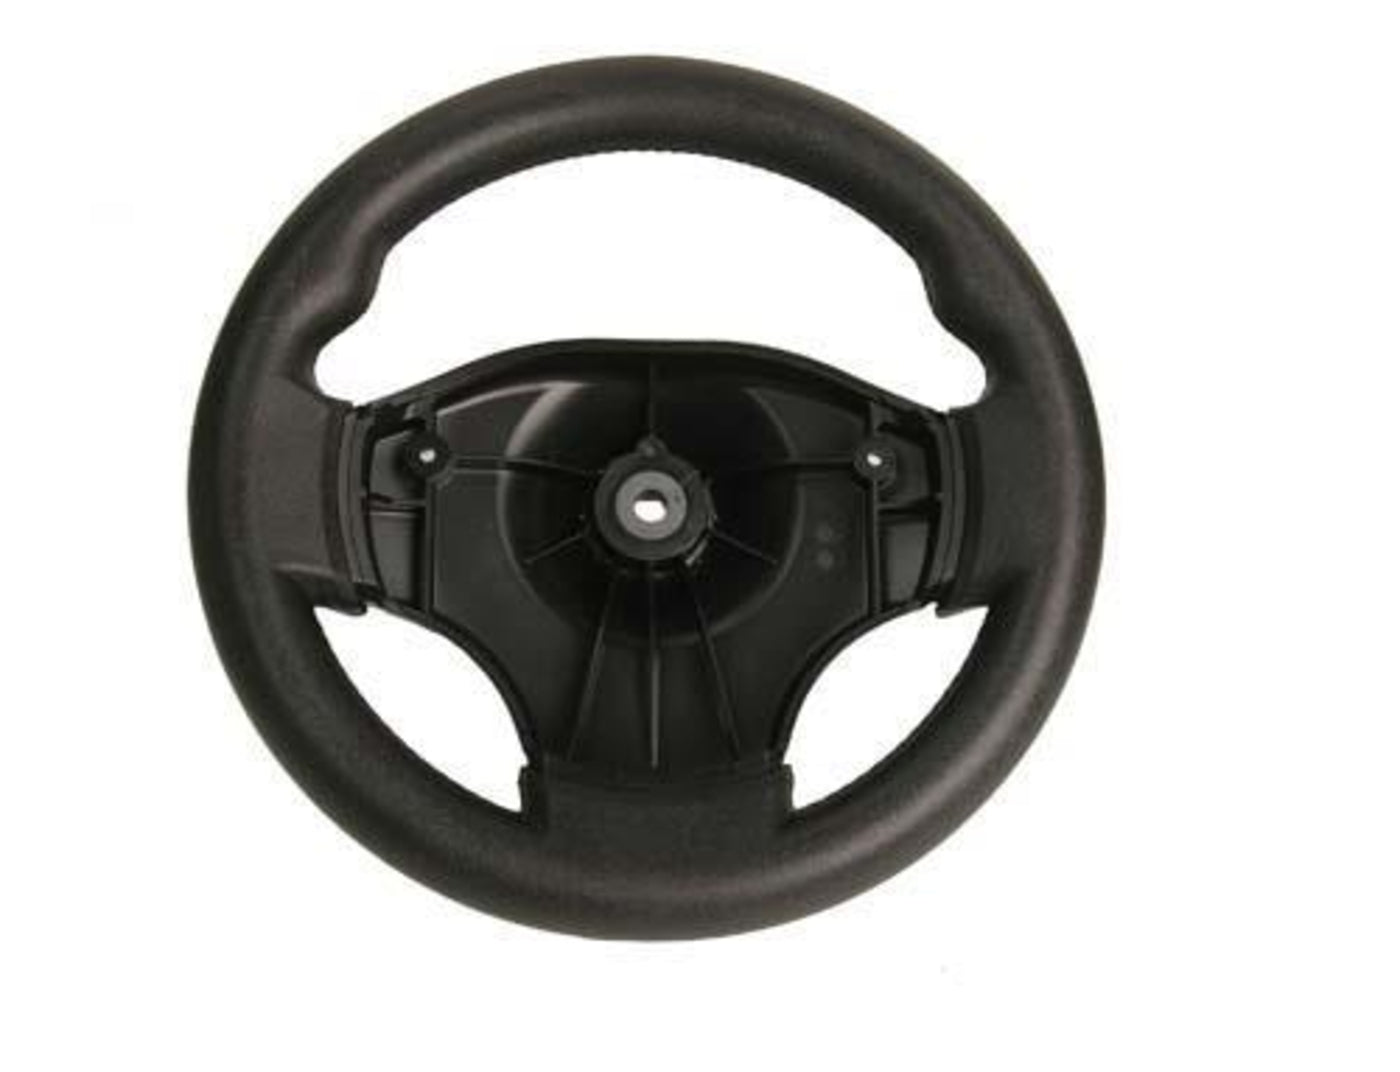 Club Car Precedent Comfort Grip Steering Wheel (Years 2012-Up)